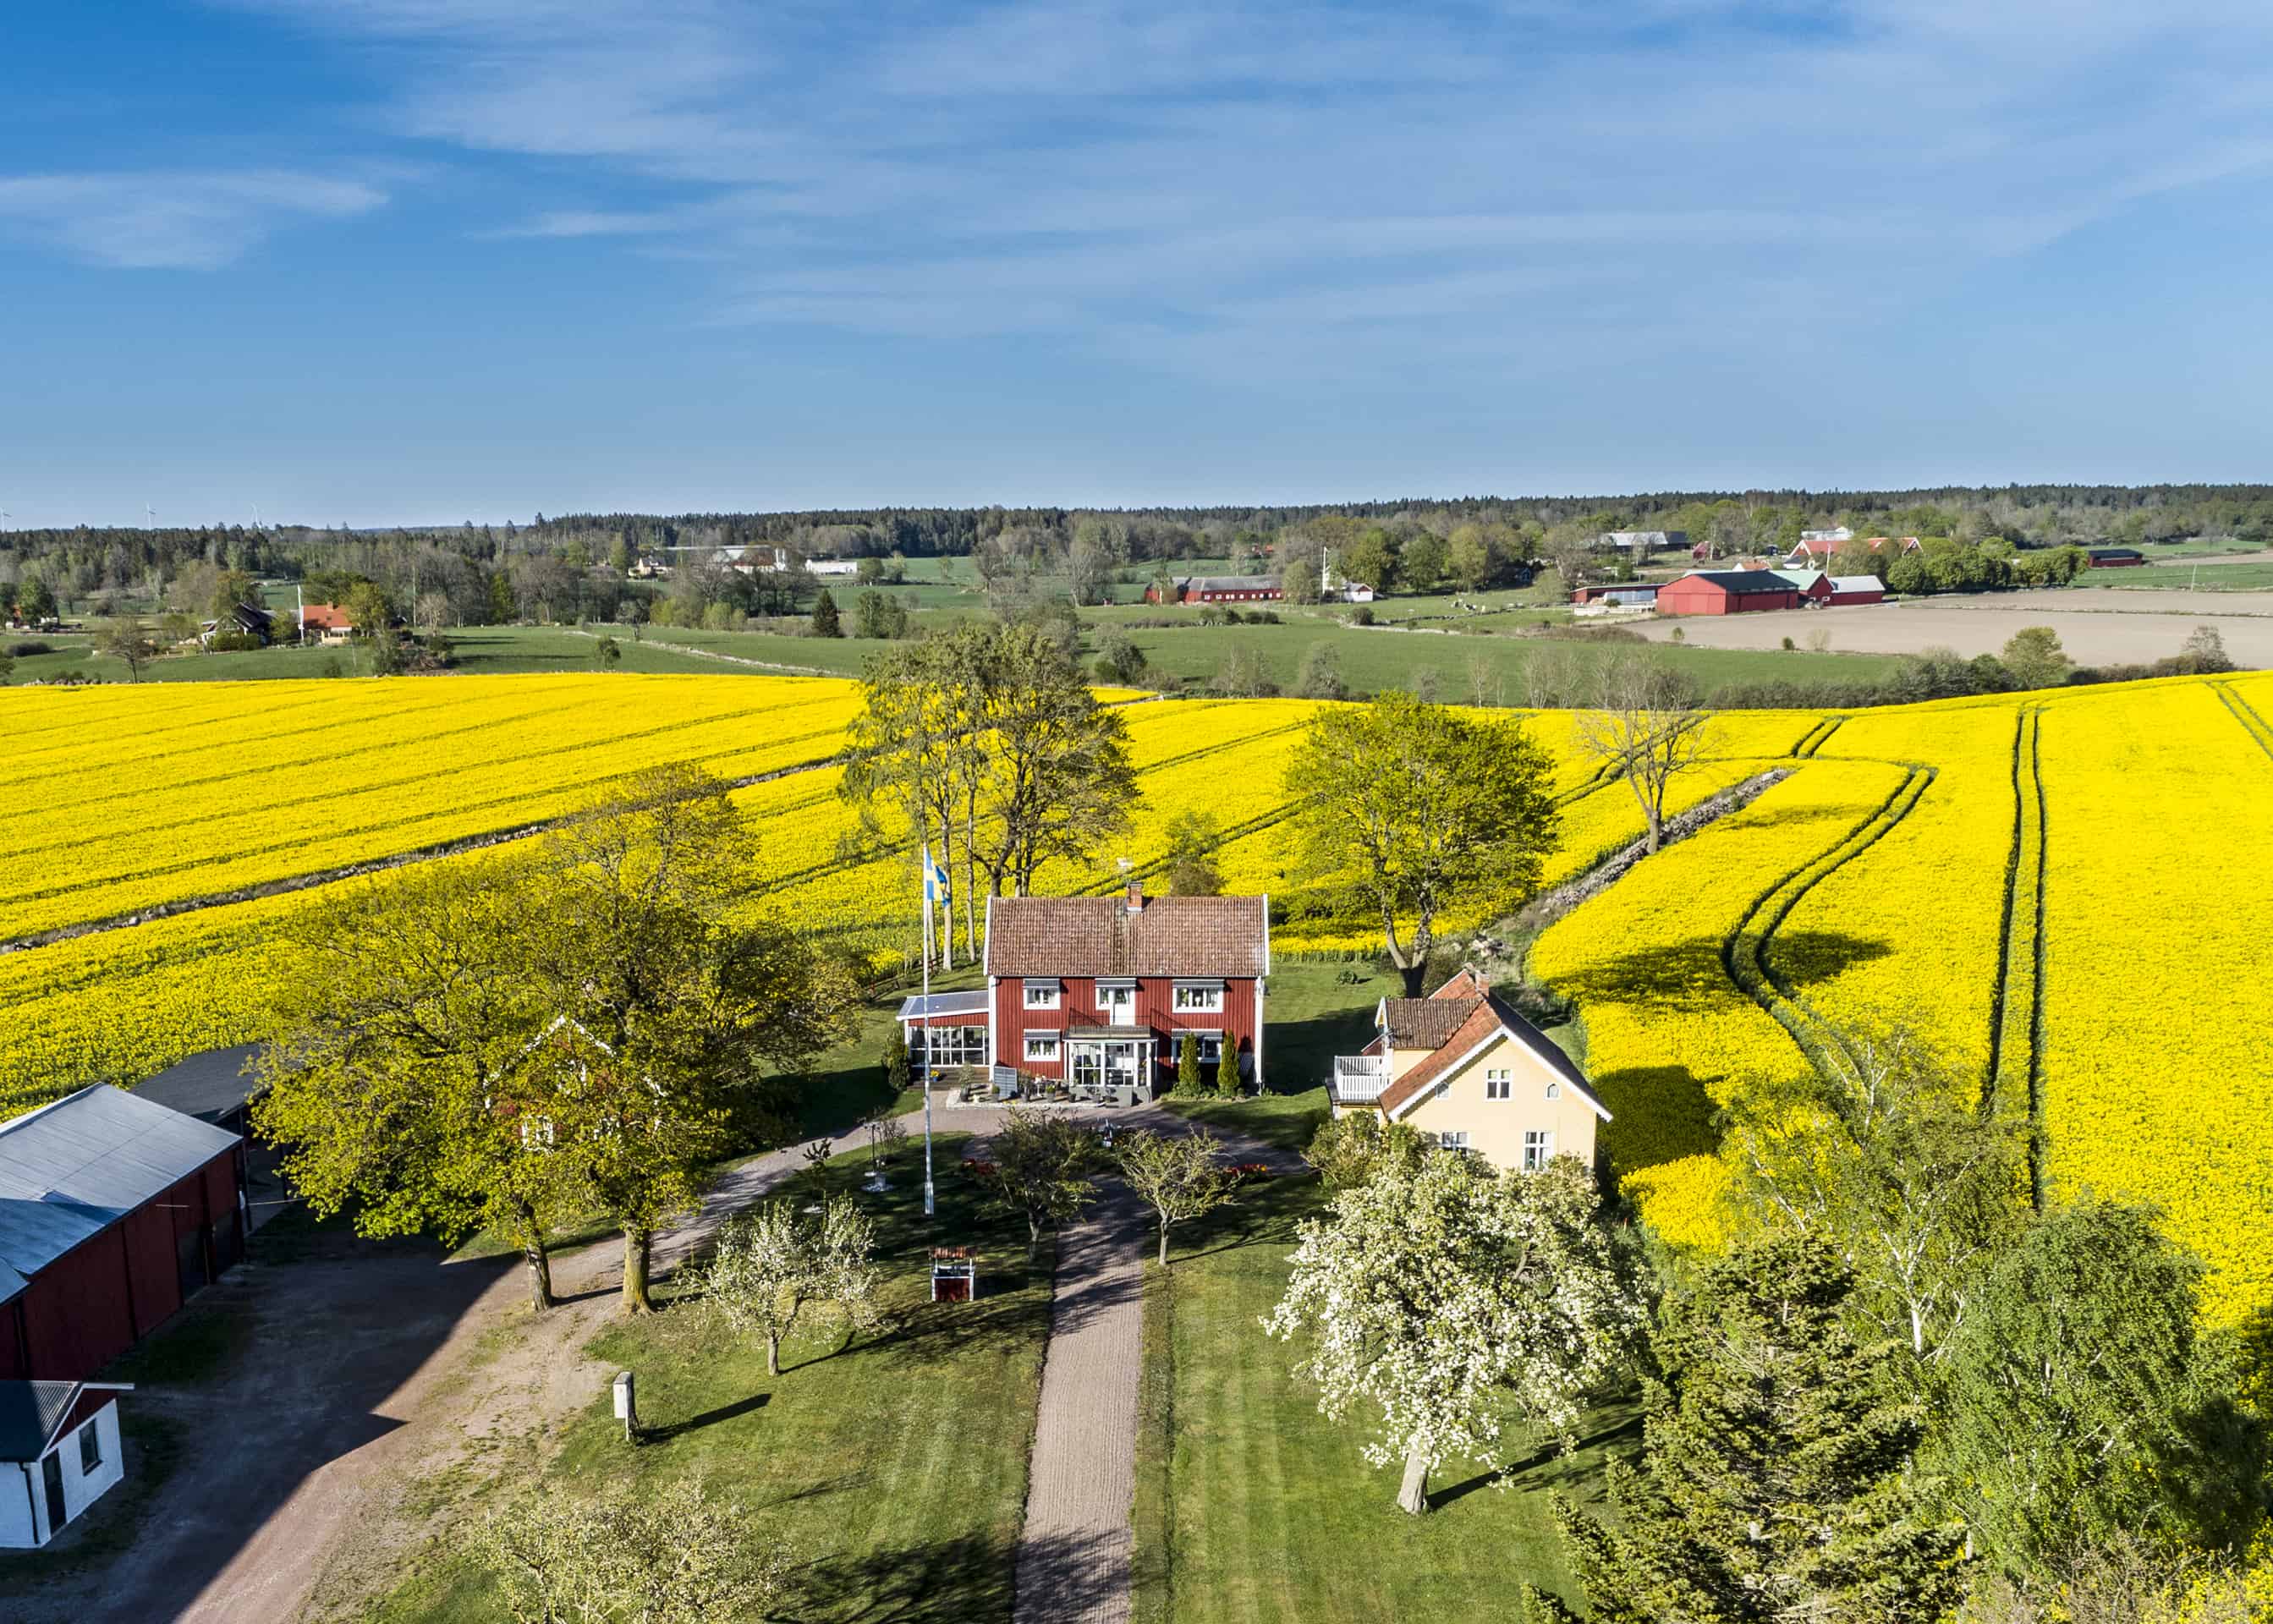 Skapa en fototavla av ett flygfotografi av din gård eller ditt lantbruk. Det blir en fantastisk tavla att hänga på väggen. Kontakta hus-foto.se, och beställ.